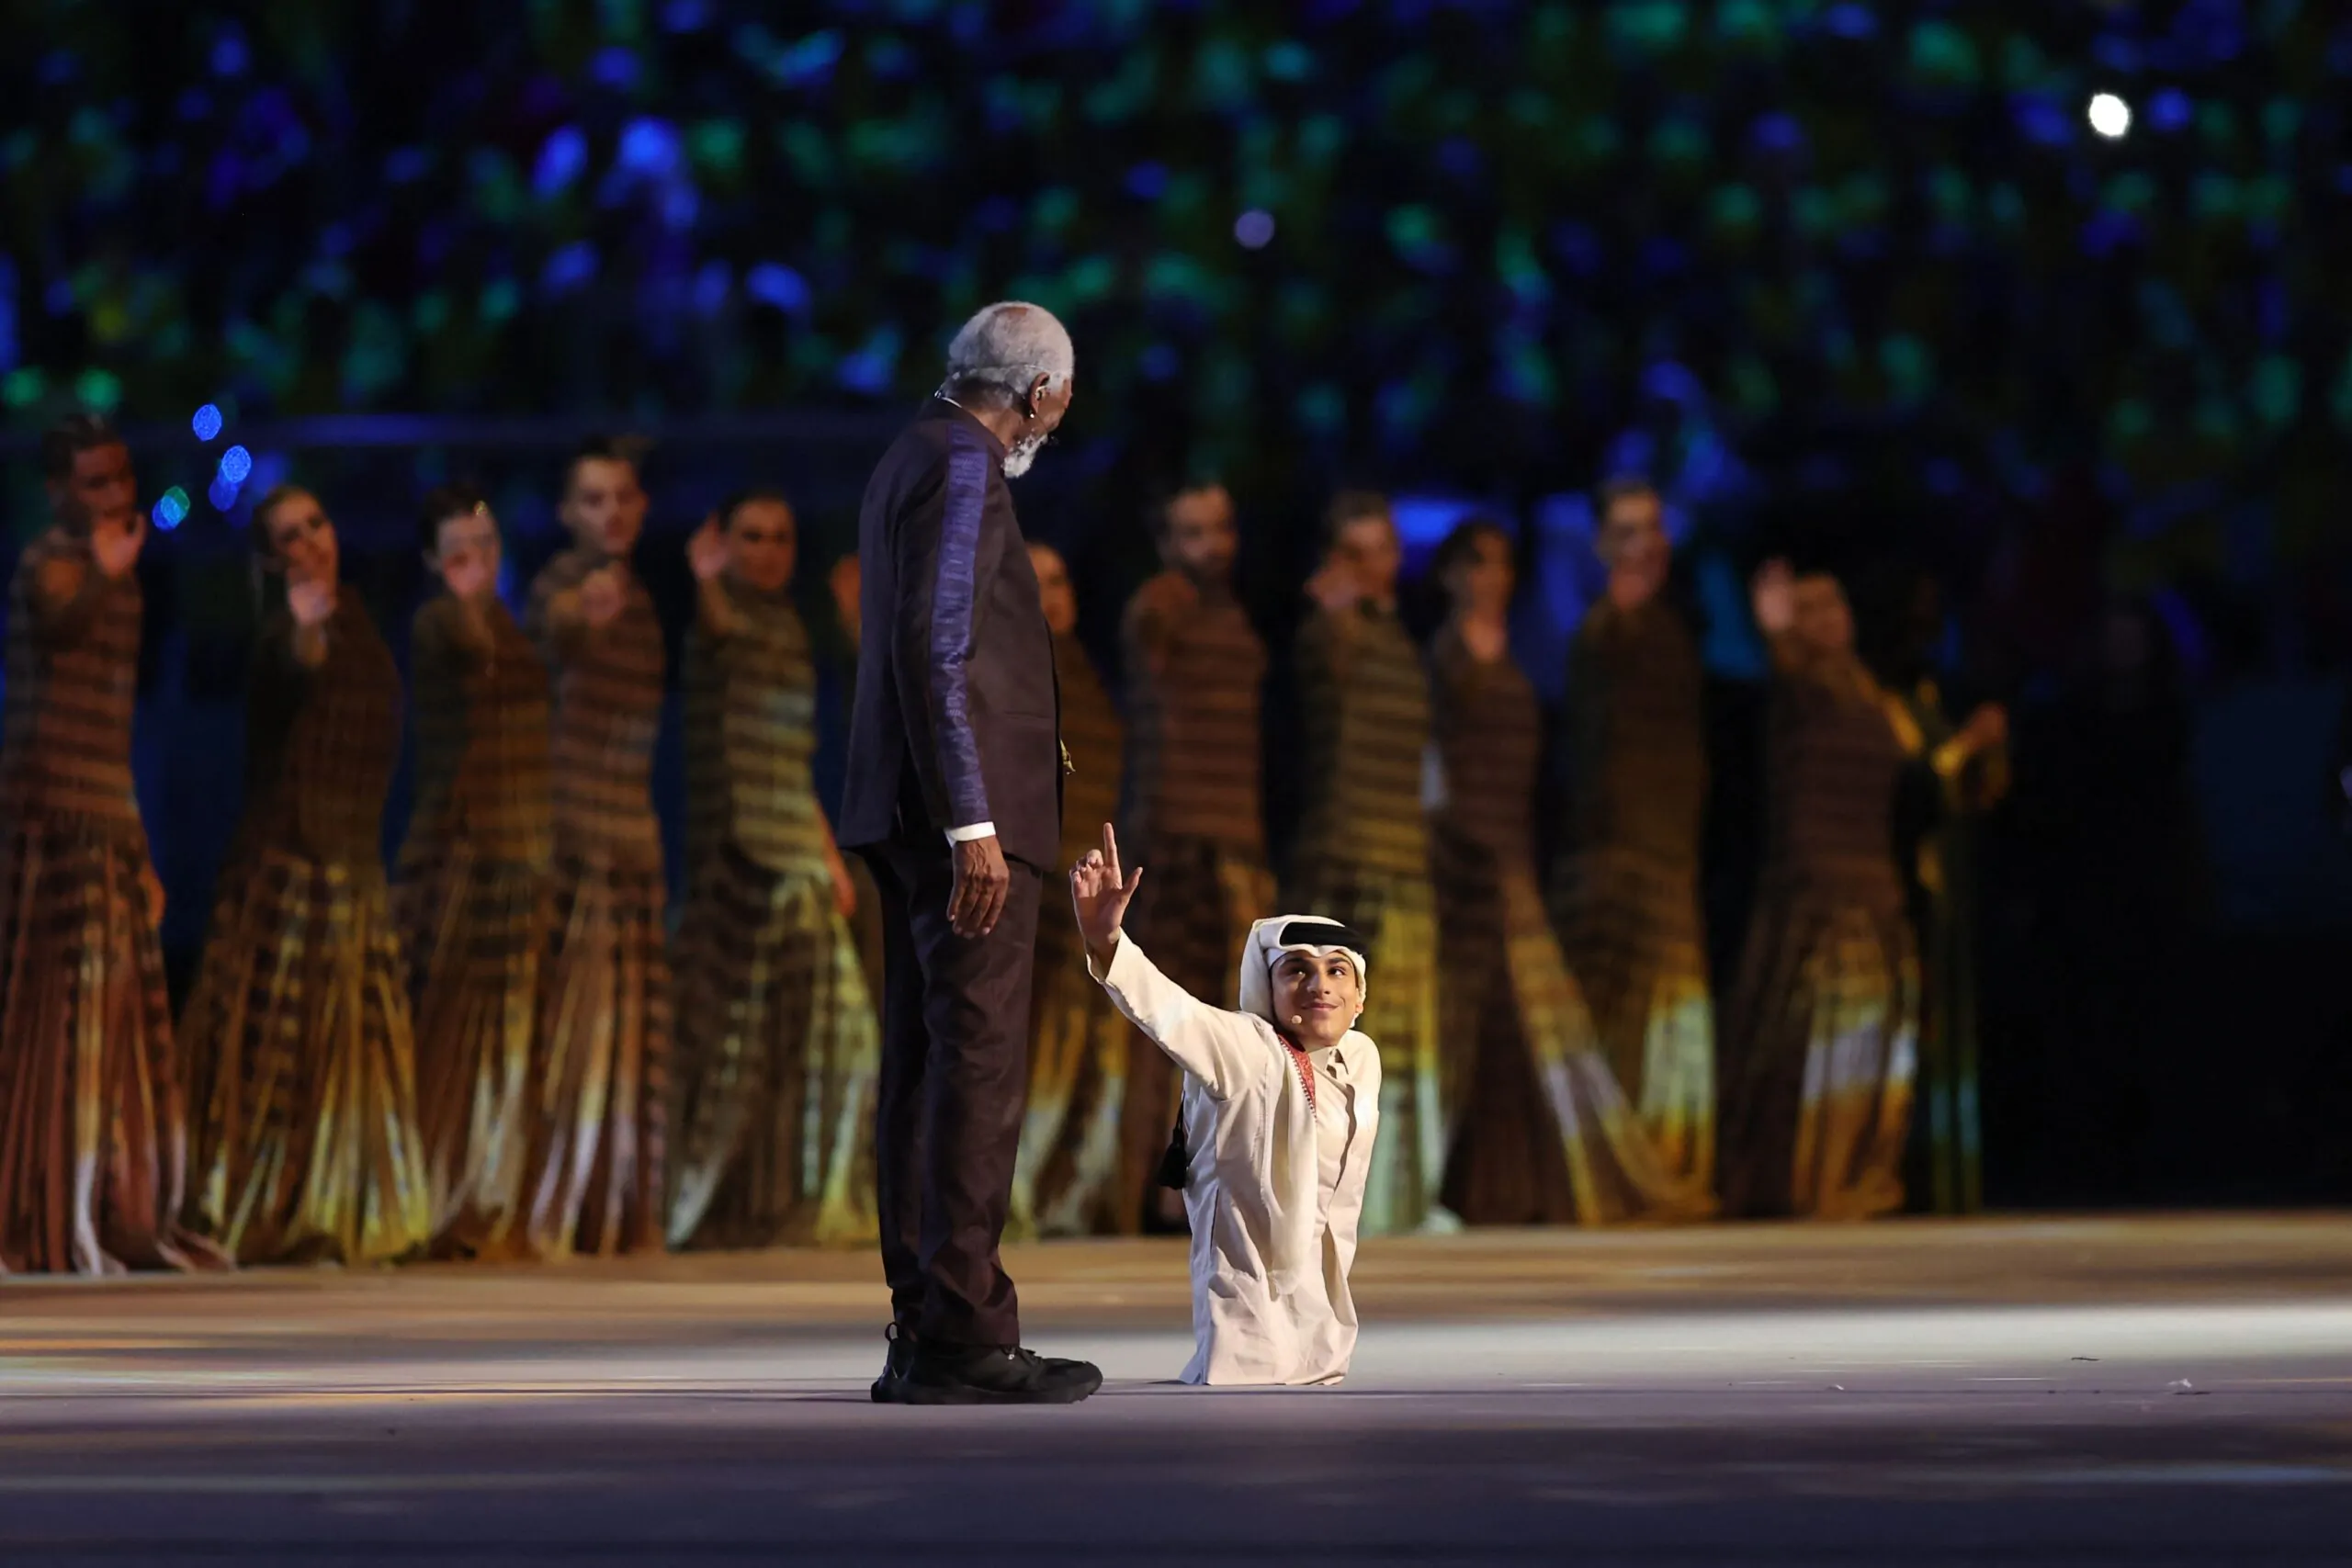 Mondiale in Qatar, Morgan Freeman sorprende gli spettatori alla cerimonia d’apertura